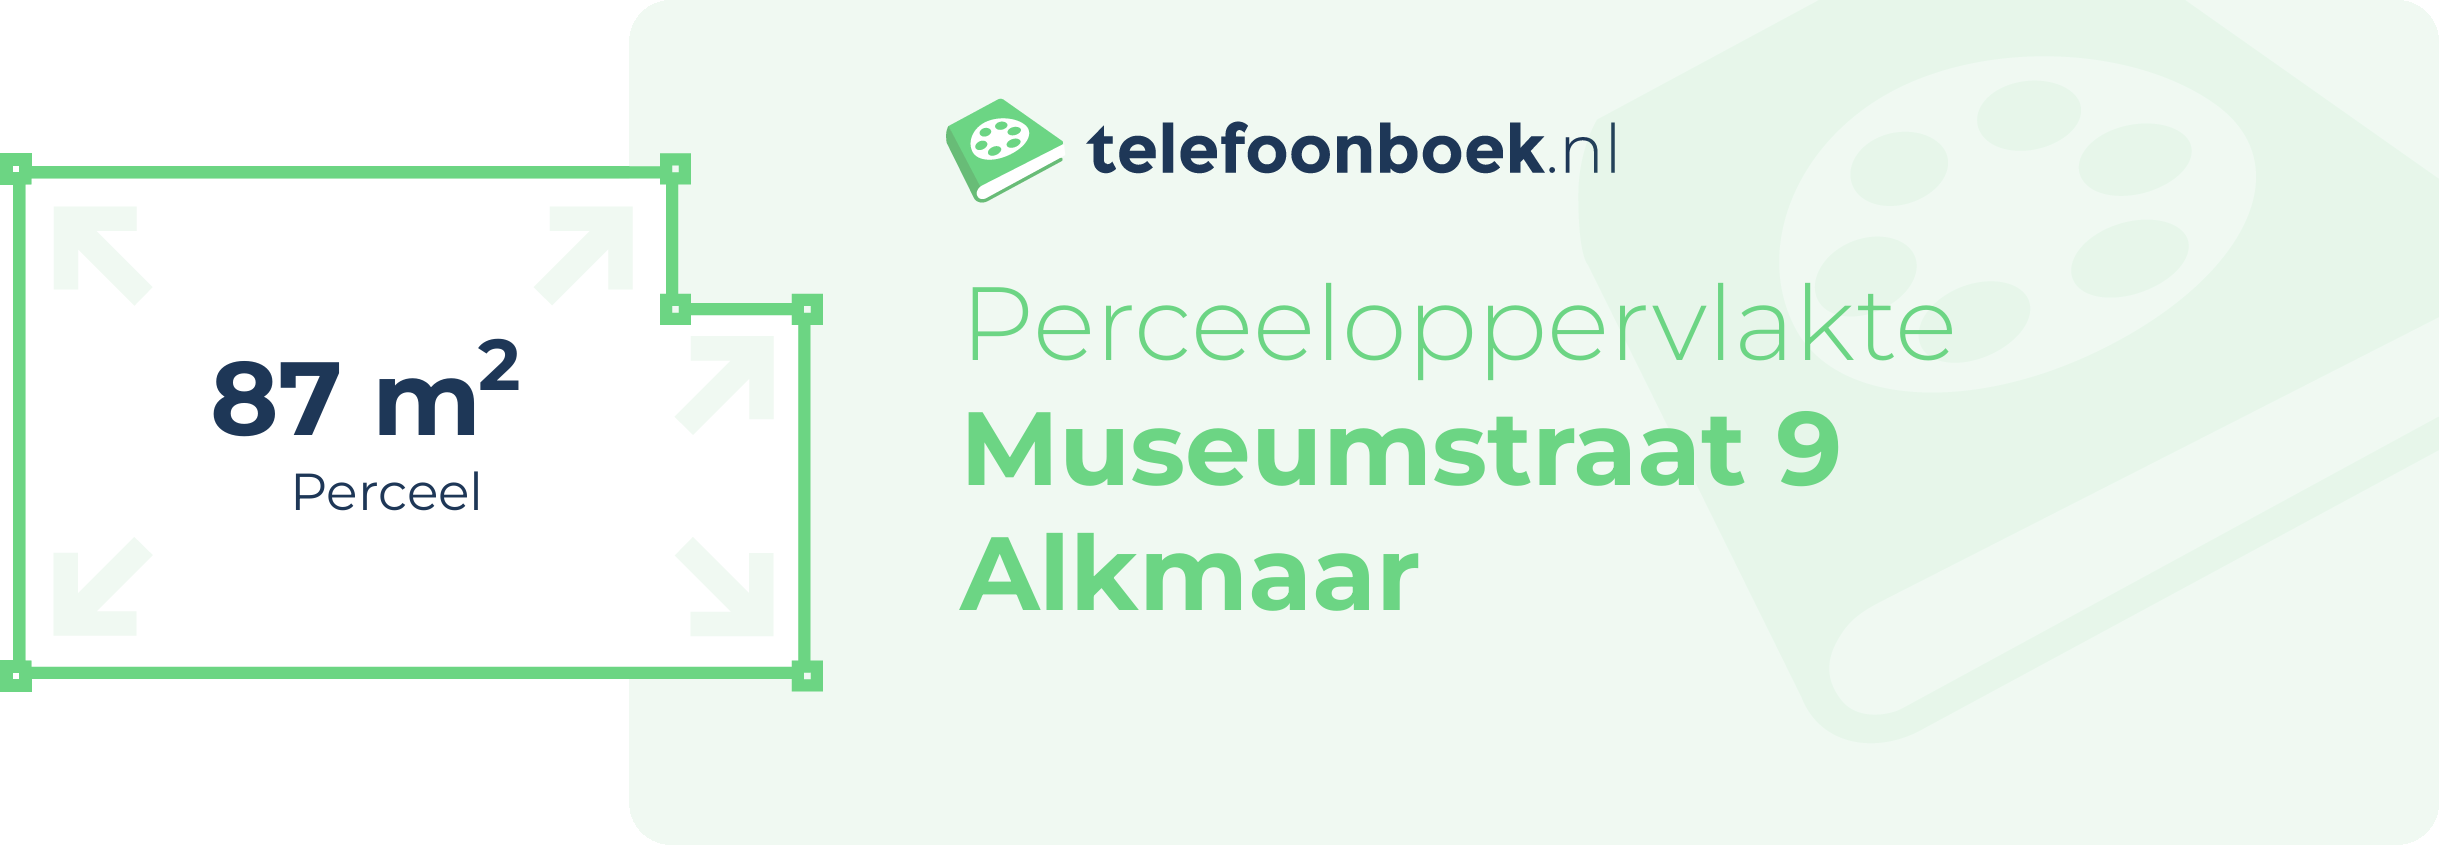 Perceeloppervlakte Museumstraat 9 Alkmaar